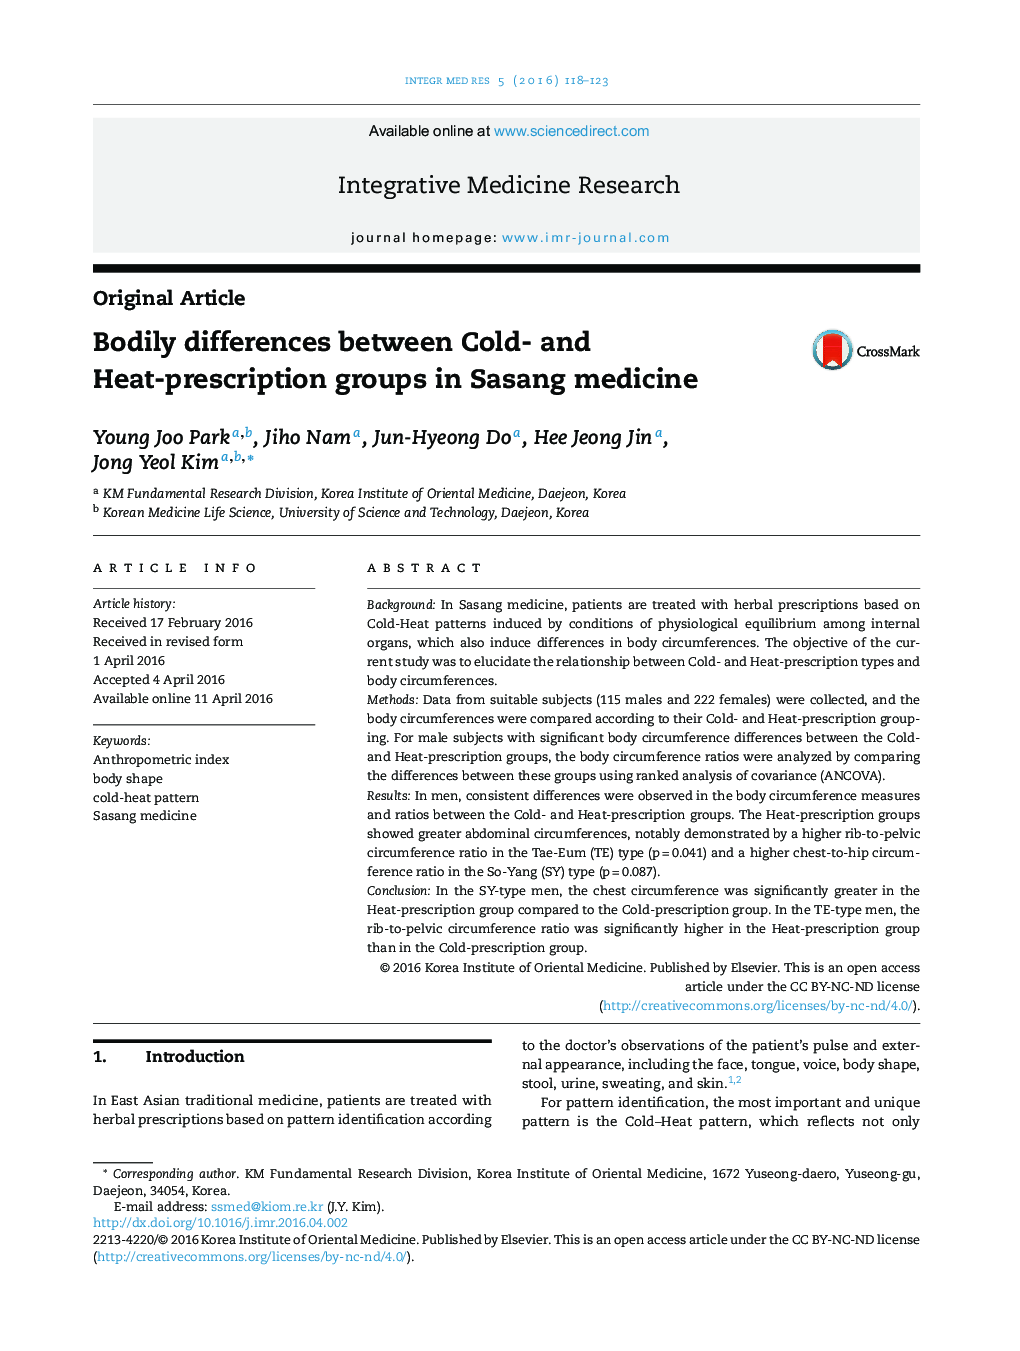 تفاوت های بدنی بین گروه های تجویز سرد و گرم در طب ساسانگ